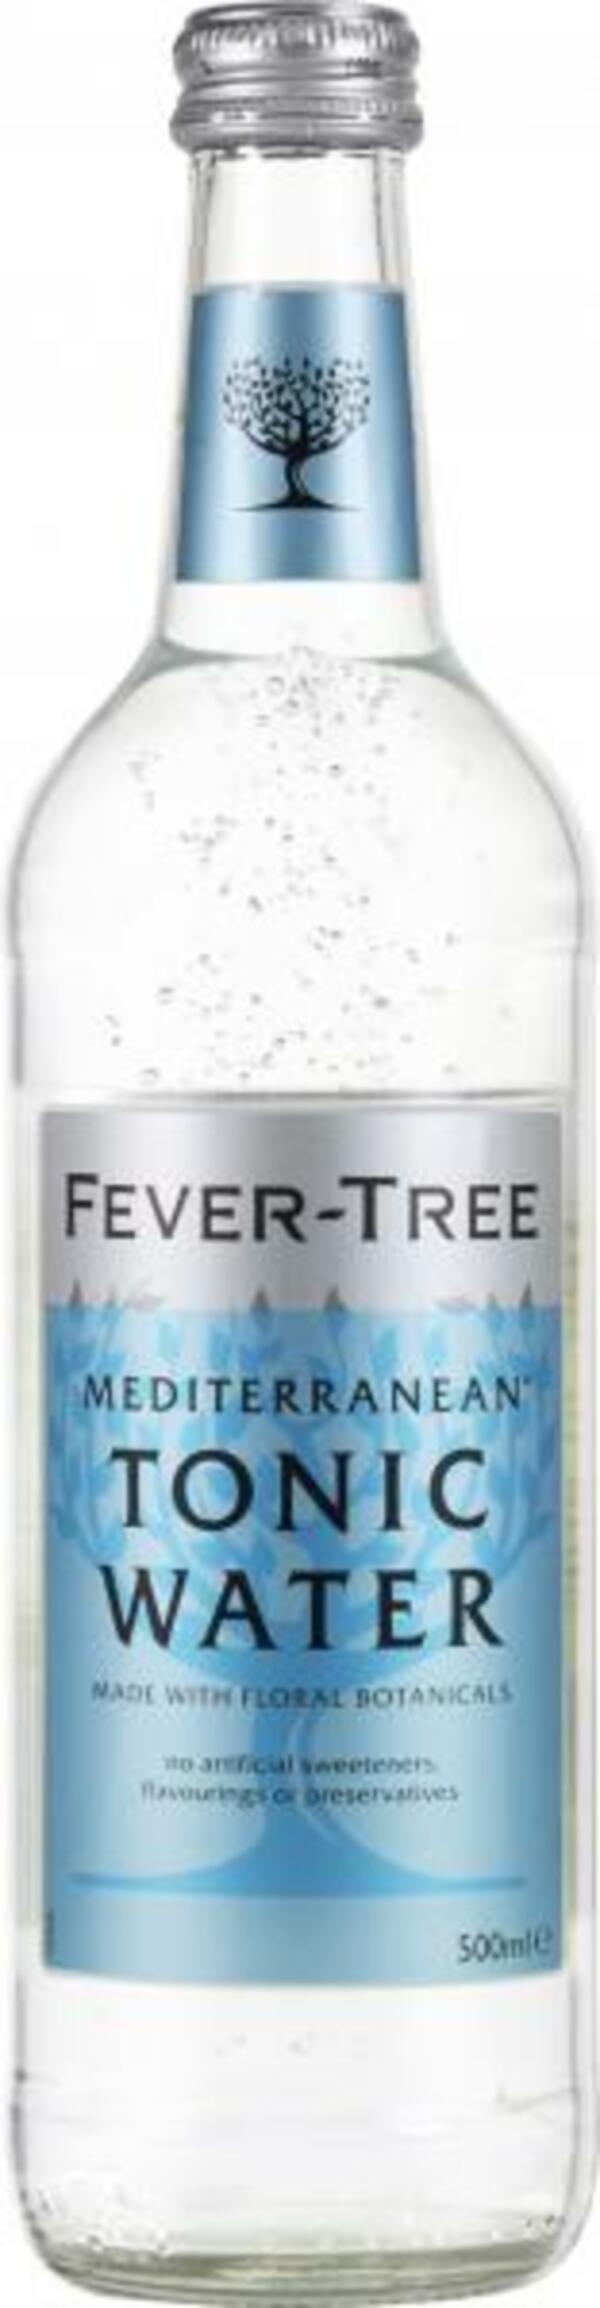 Bild 1 von Fever-Tree Mediterranean Tonic Water (Mehrweg)